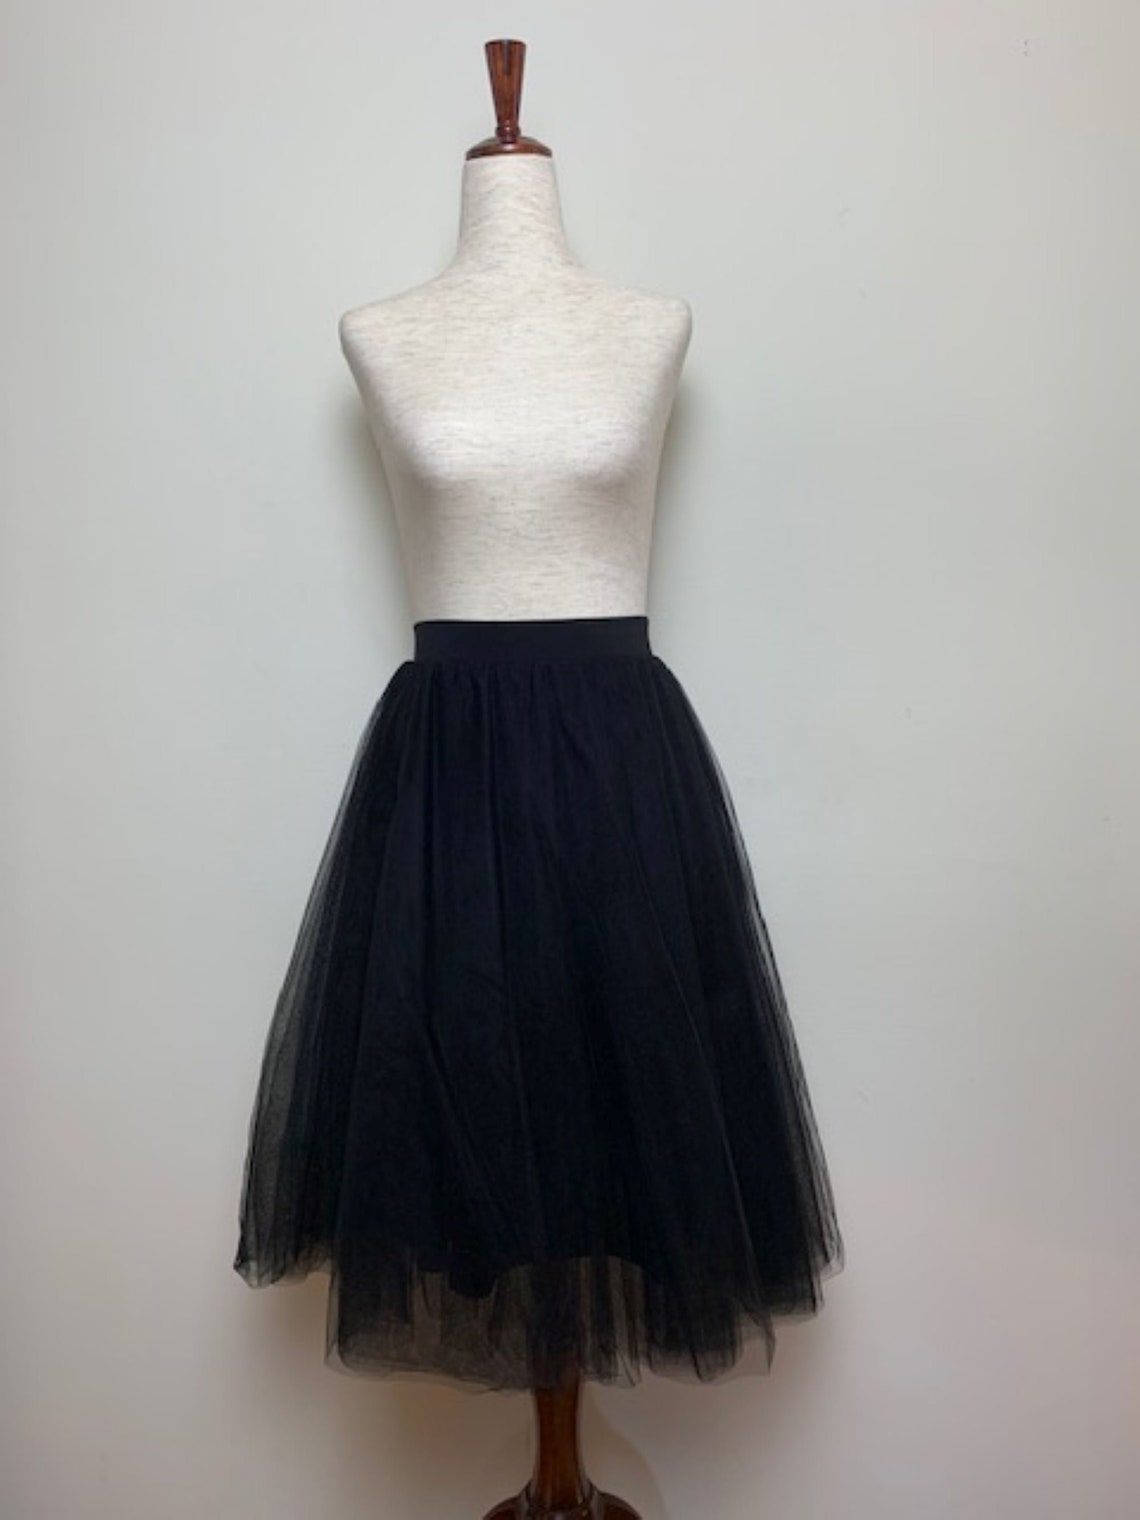 Black Netting Skirt | Etsy